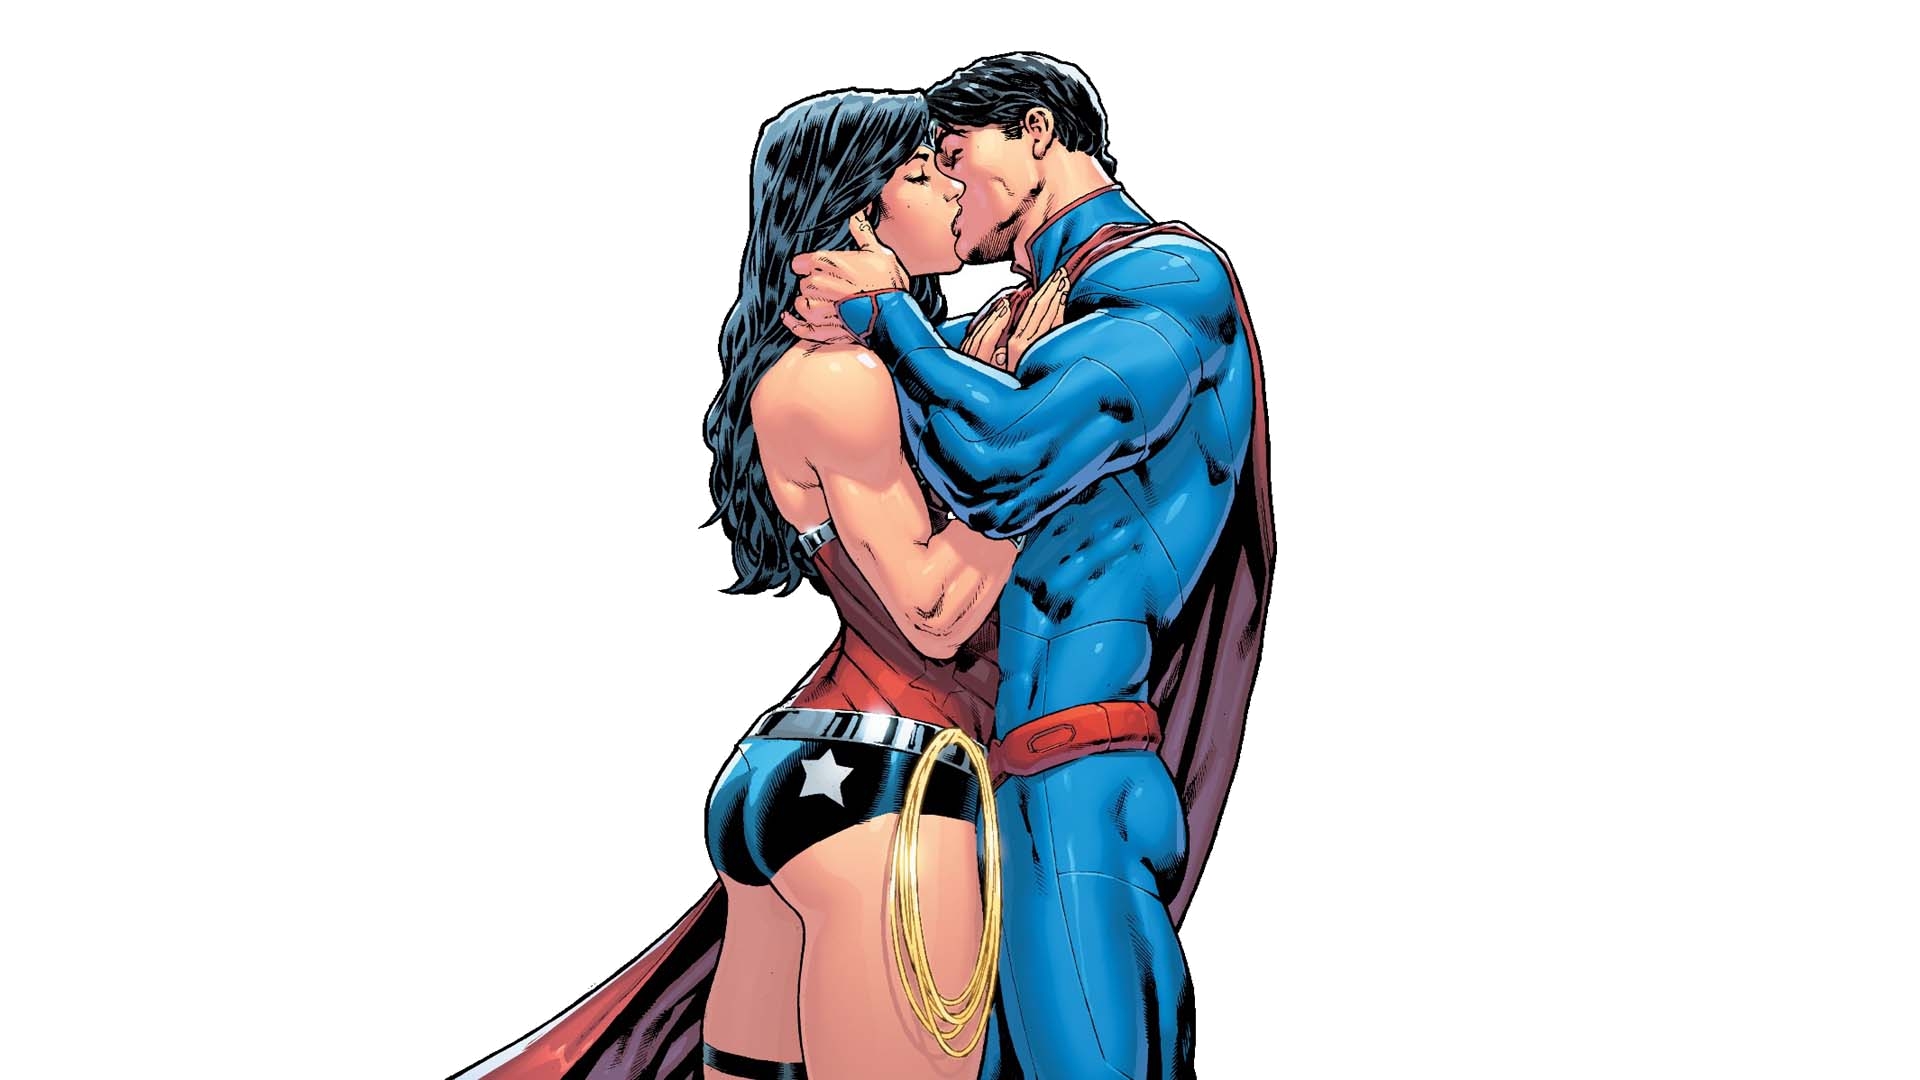 Скачать обои Супермен/чудо Женщина на телефон бесплатно